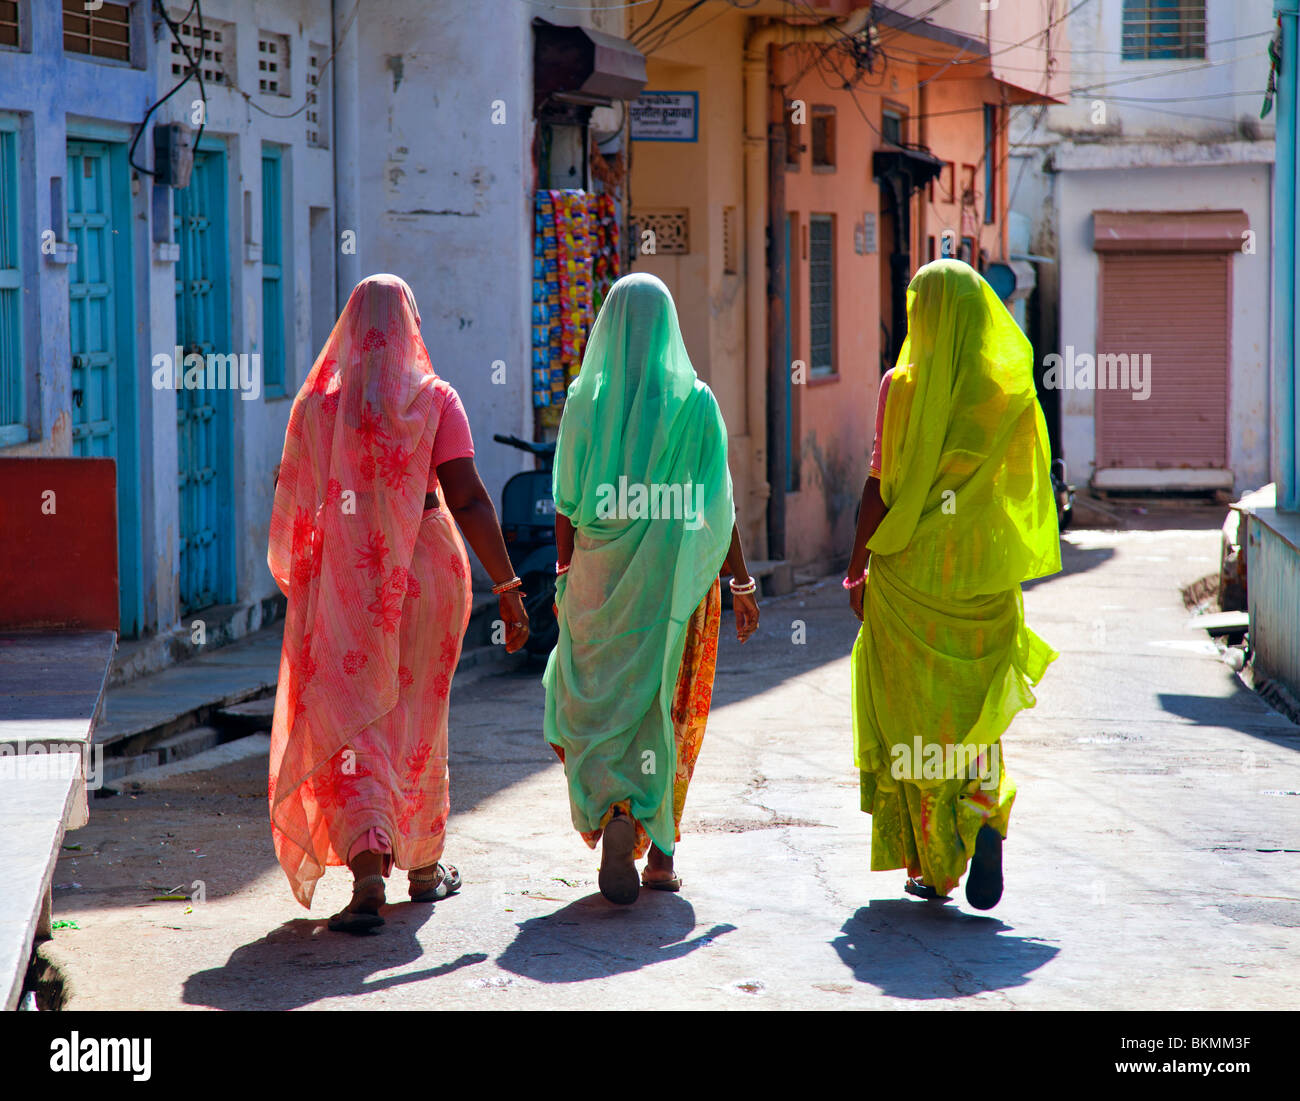 India, Rajasthan, Jodhpur, three women in saris walking away from camera Stock Photo